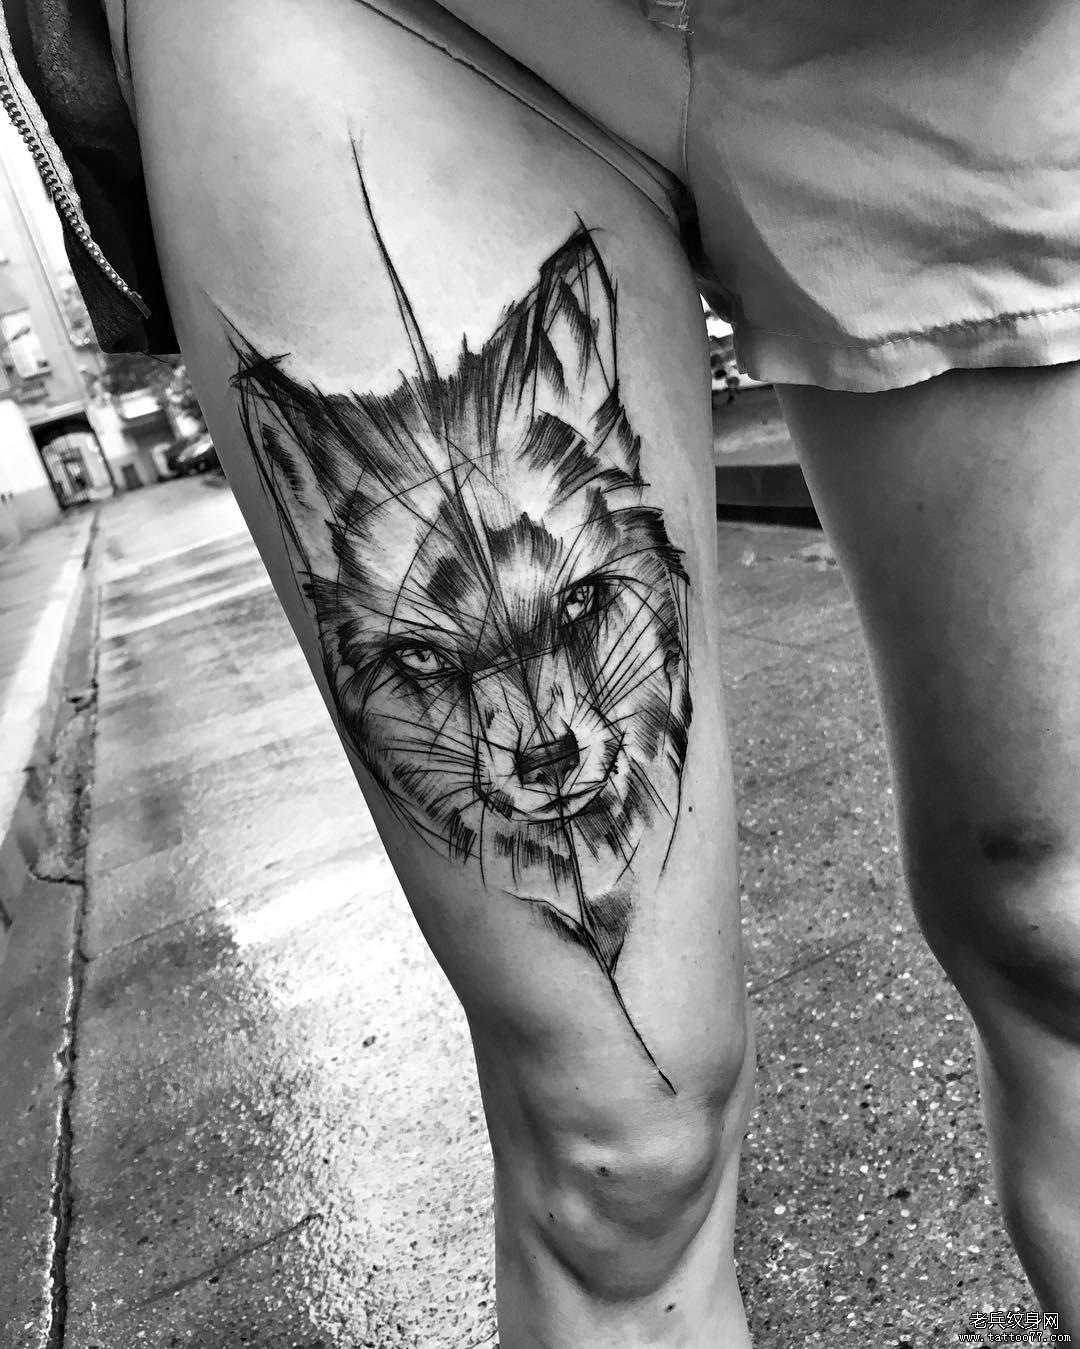 大腿钢笔画风格狐狸纹身图案